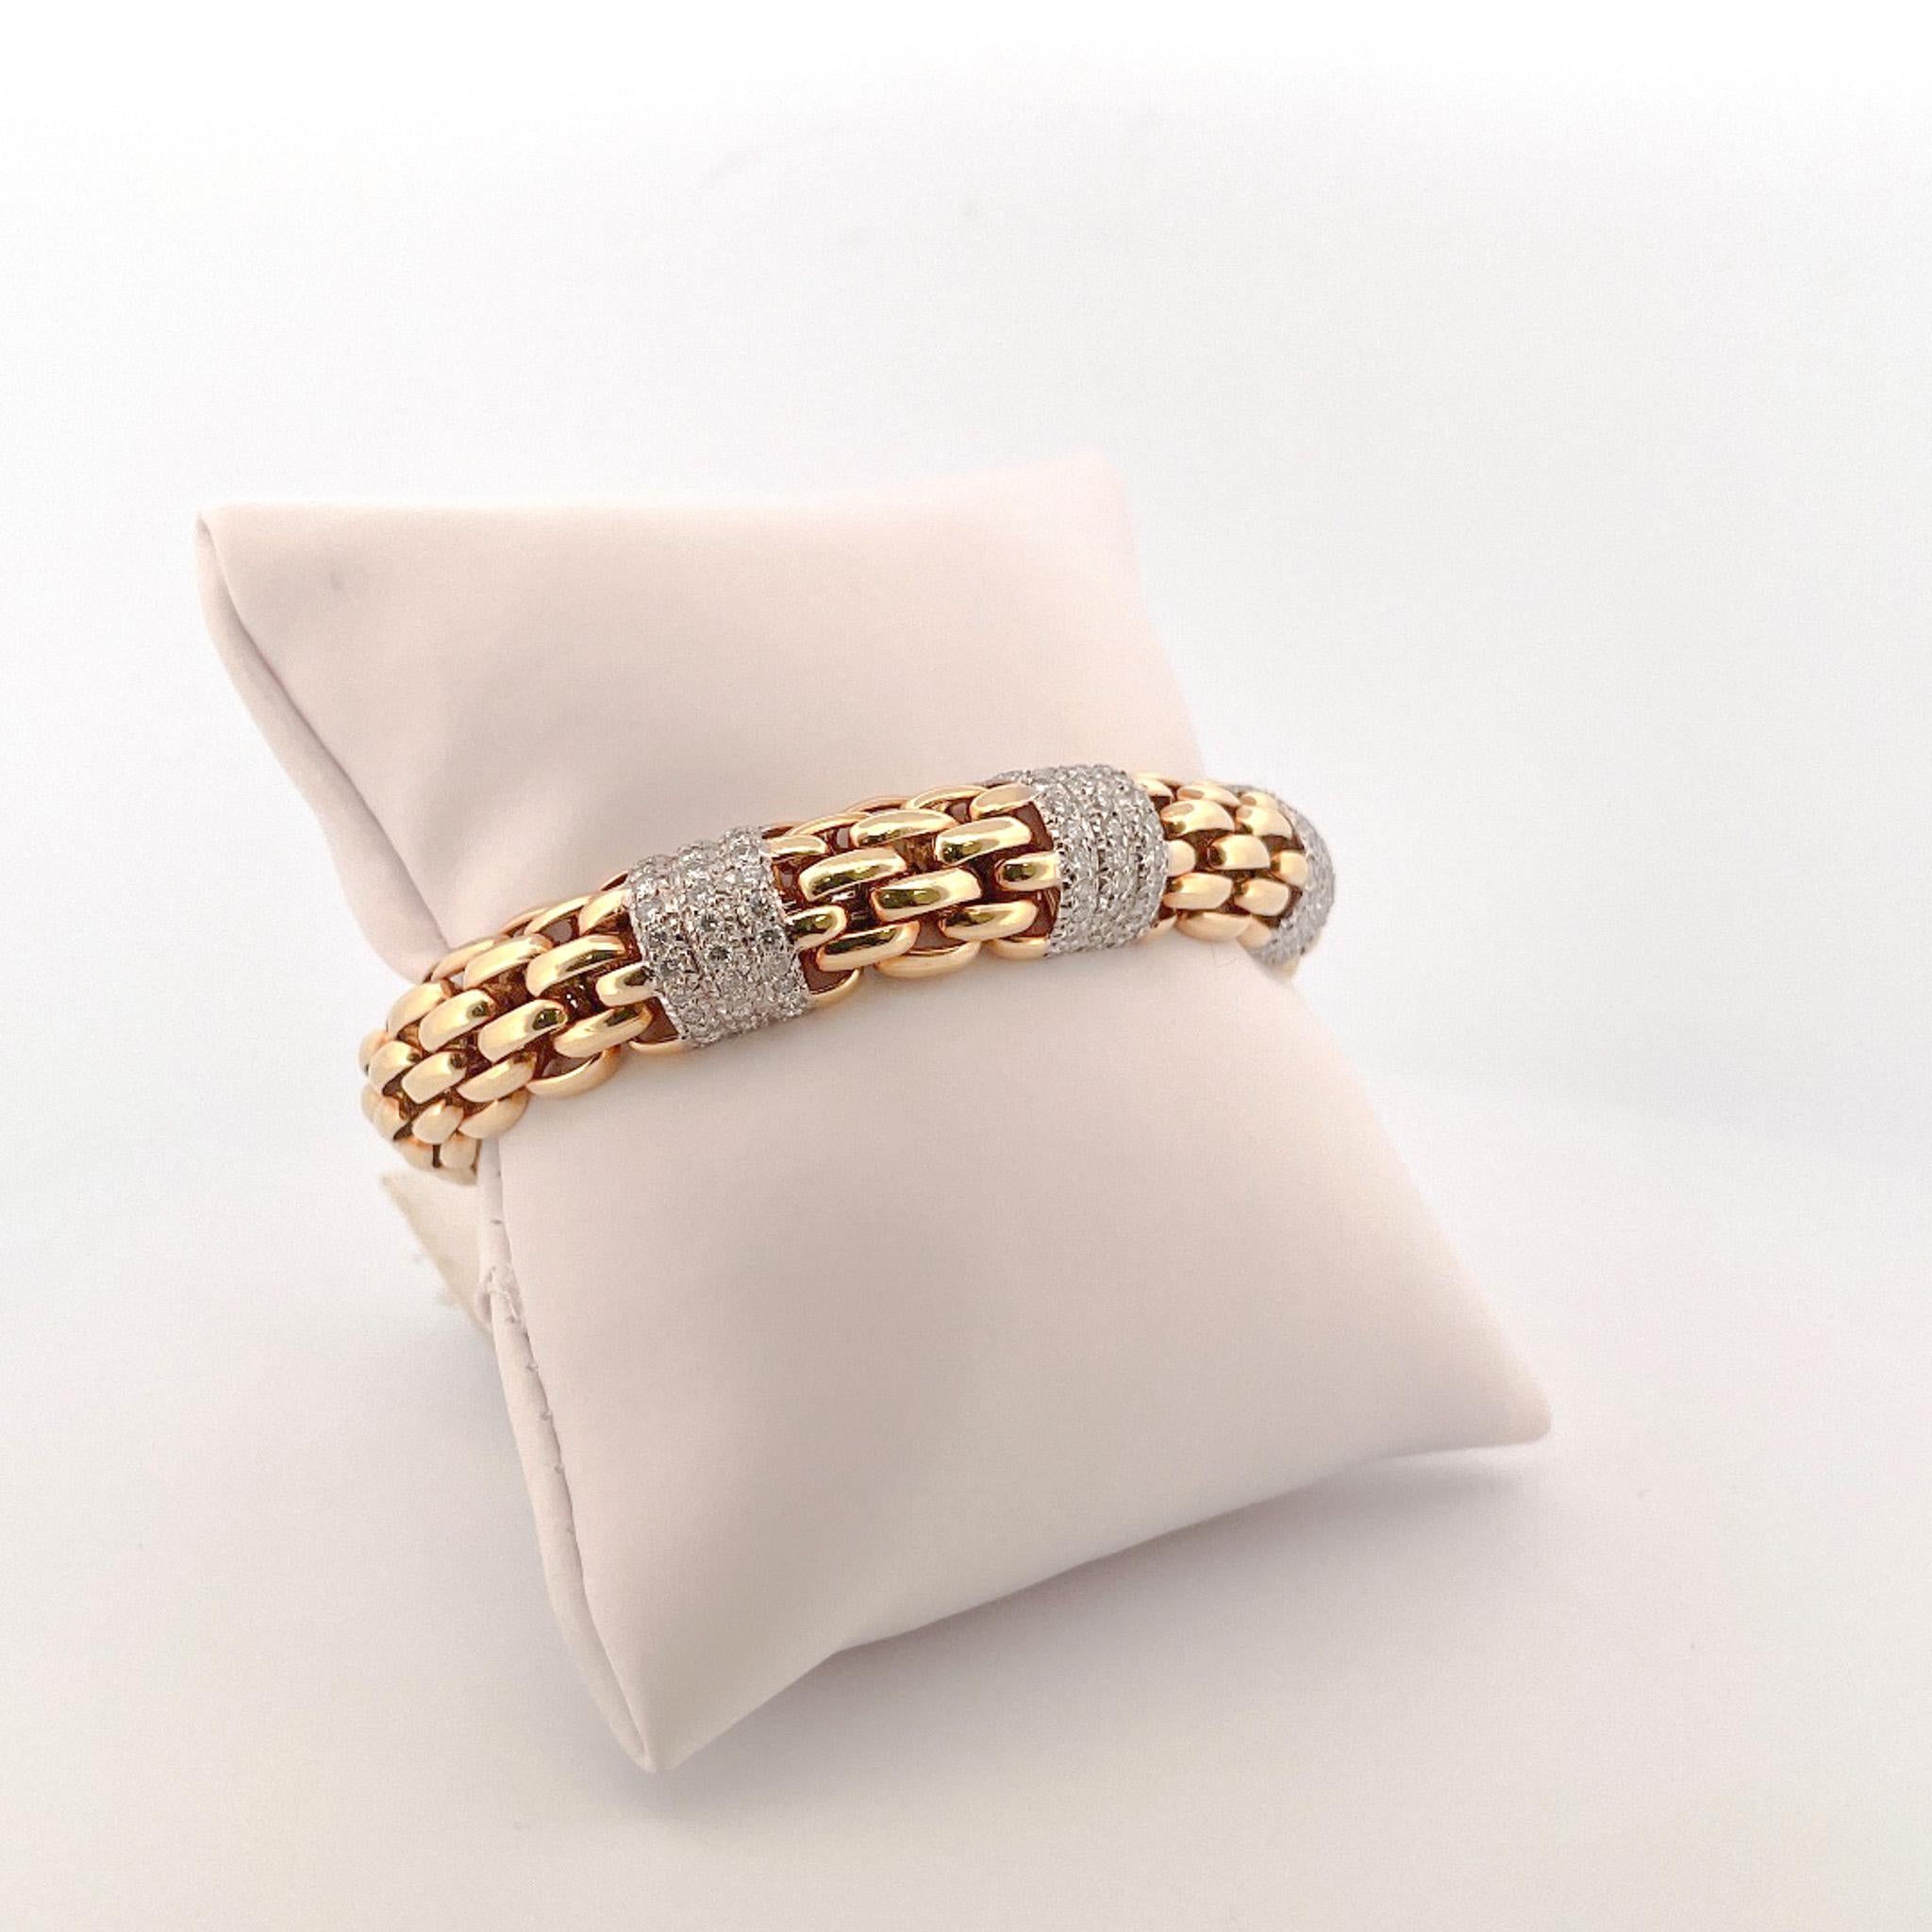 Von der Eiseman Estate Jewelry Collection, 18 Karat Gelbgold Diamant gewebt Link Manschette Armband. Dieses Armband ist mit 108 gepflasterten Diamanten mit einem Gesamtgewicht von 2,00 Karat gefertigt. Diese Diamanten sind in 3 Reihen entlang von 3